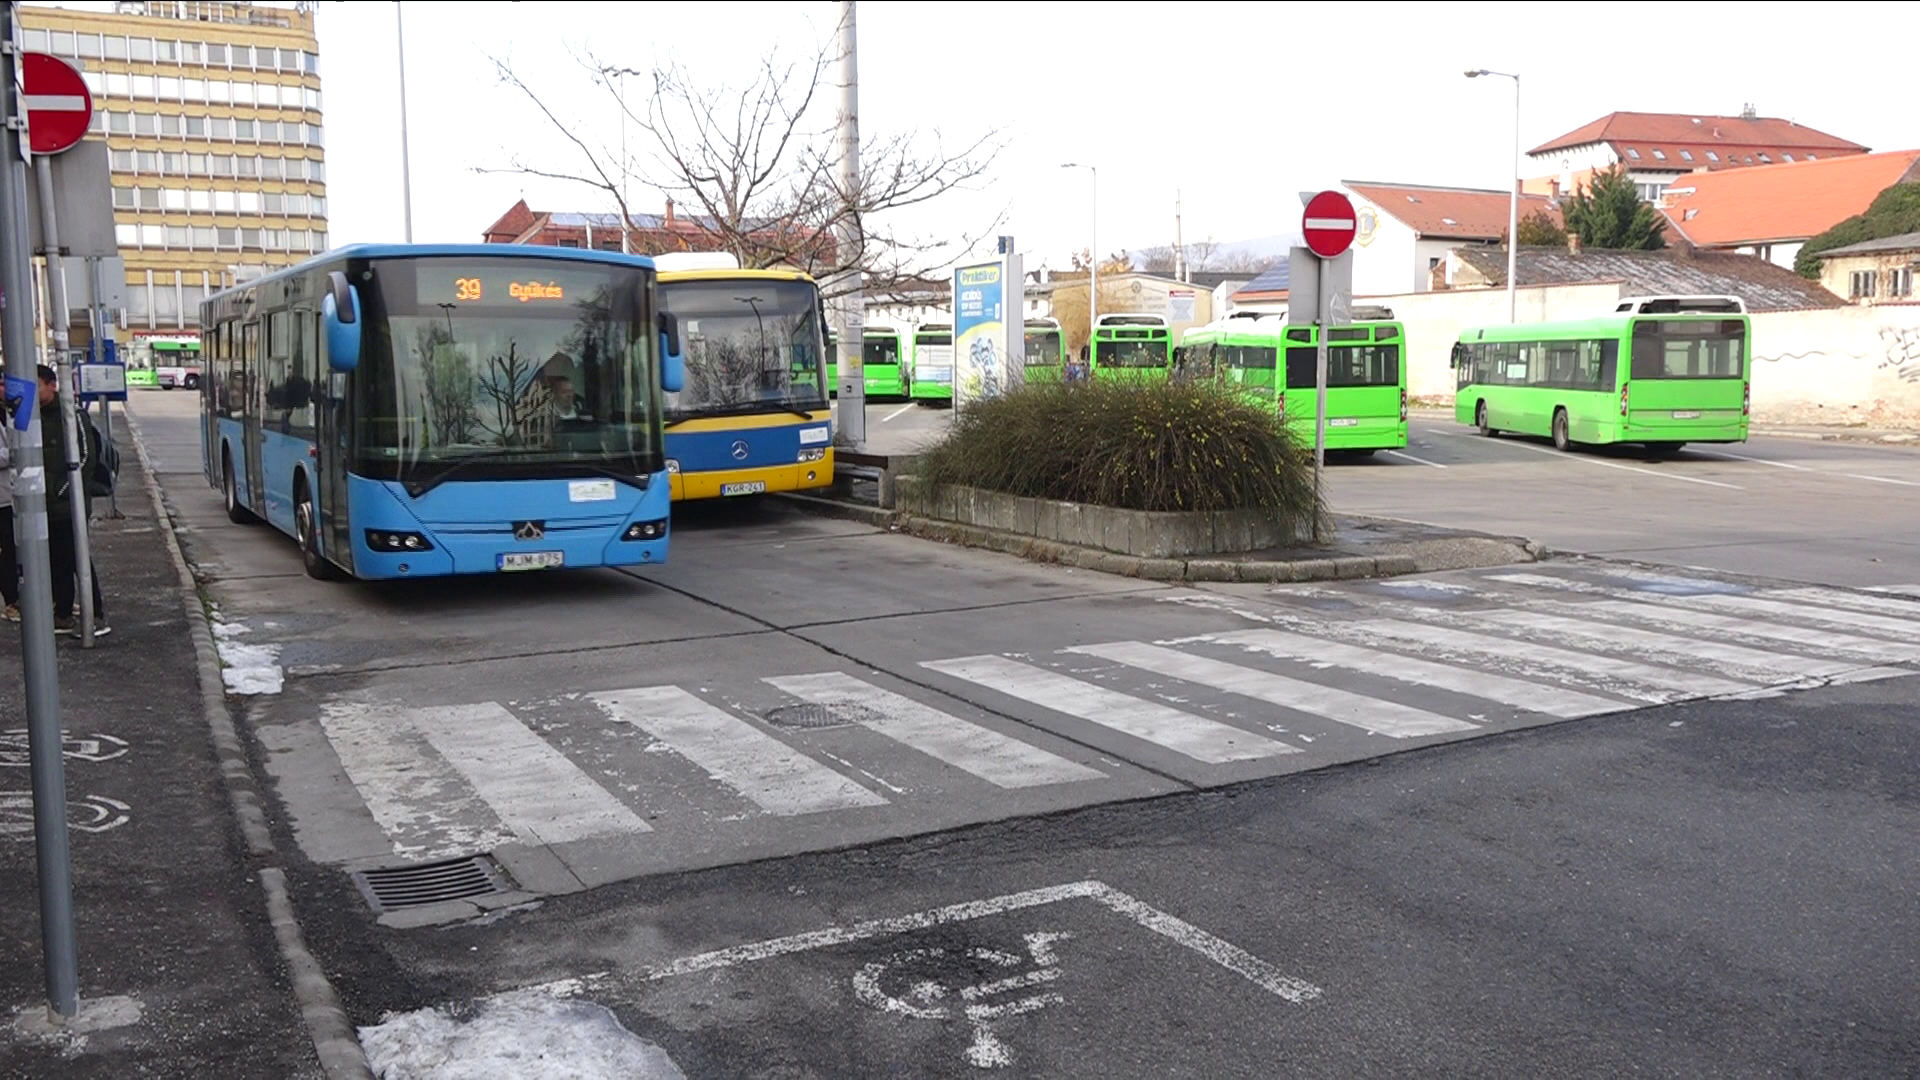 Pécsen veszélyben a buszszolgáltatás